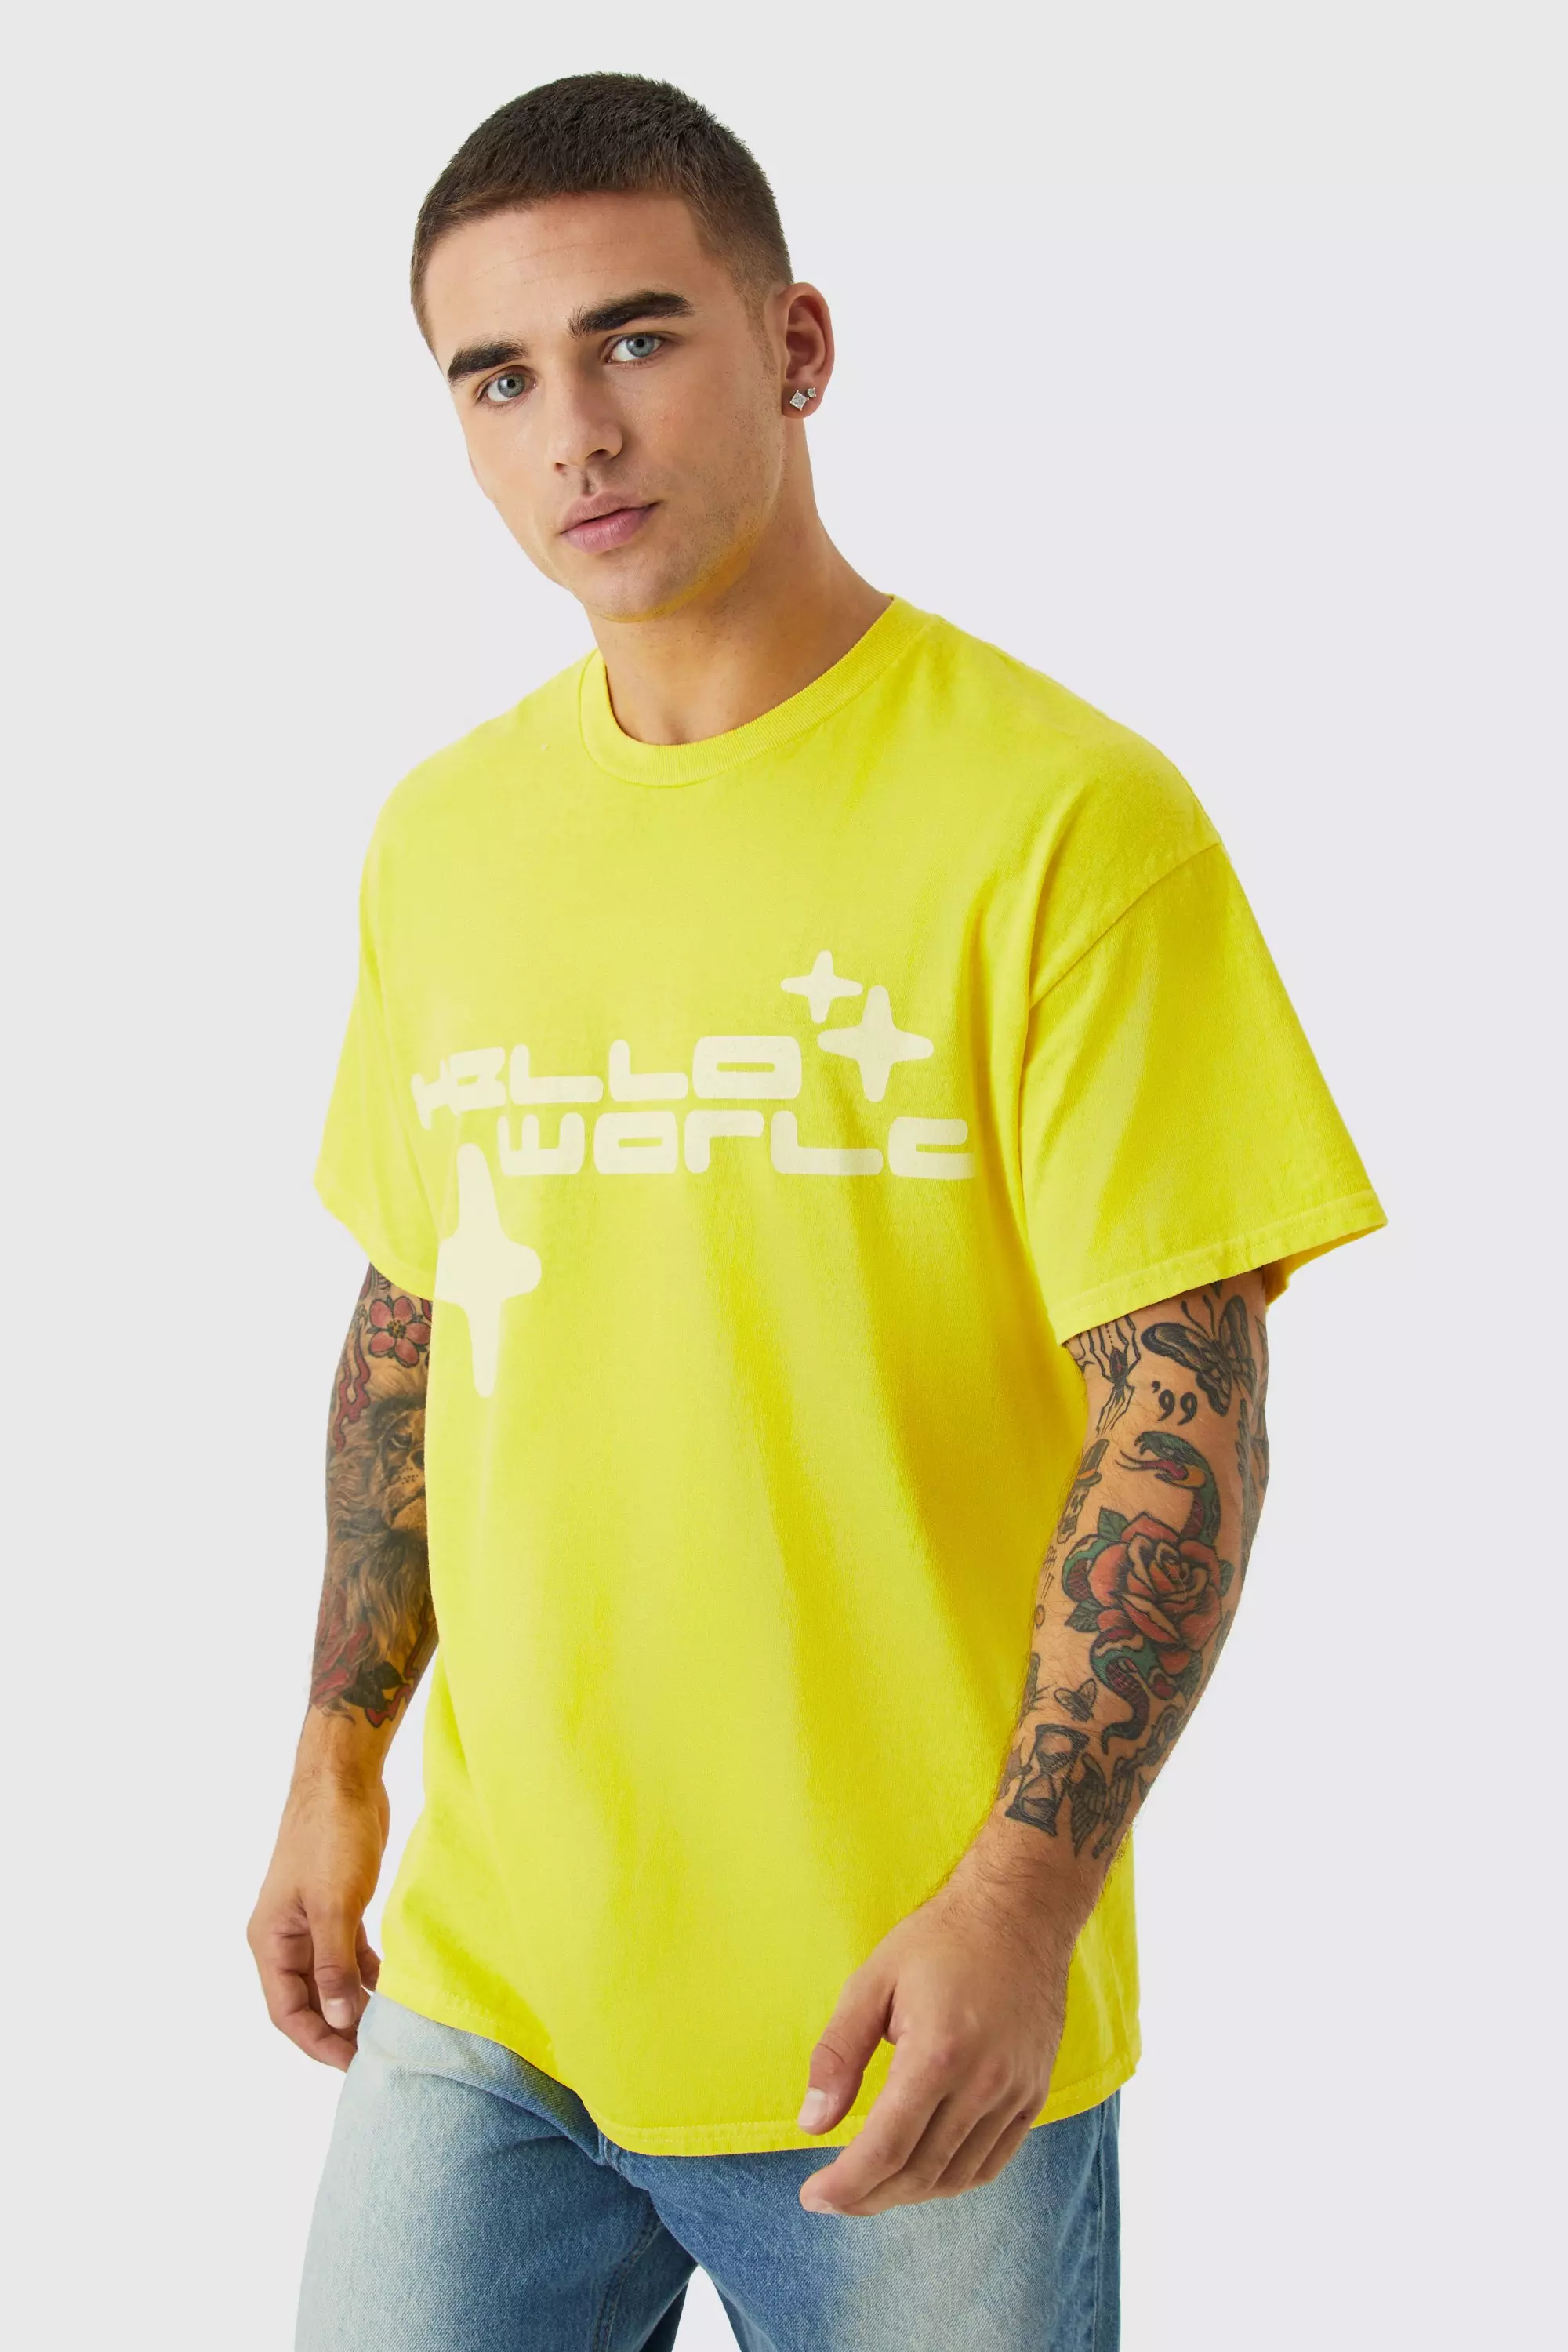 Oversized Worldwide Wash Graphic T-shirt Yellow